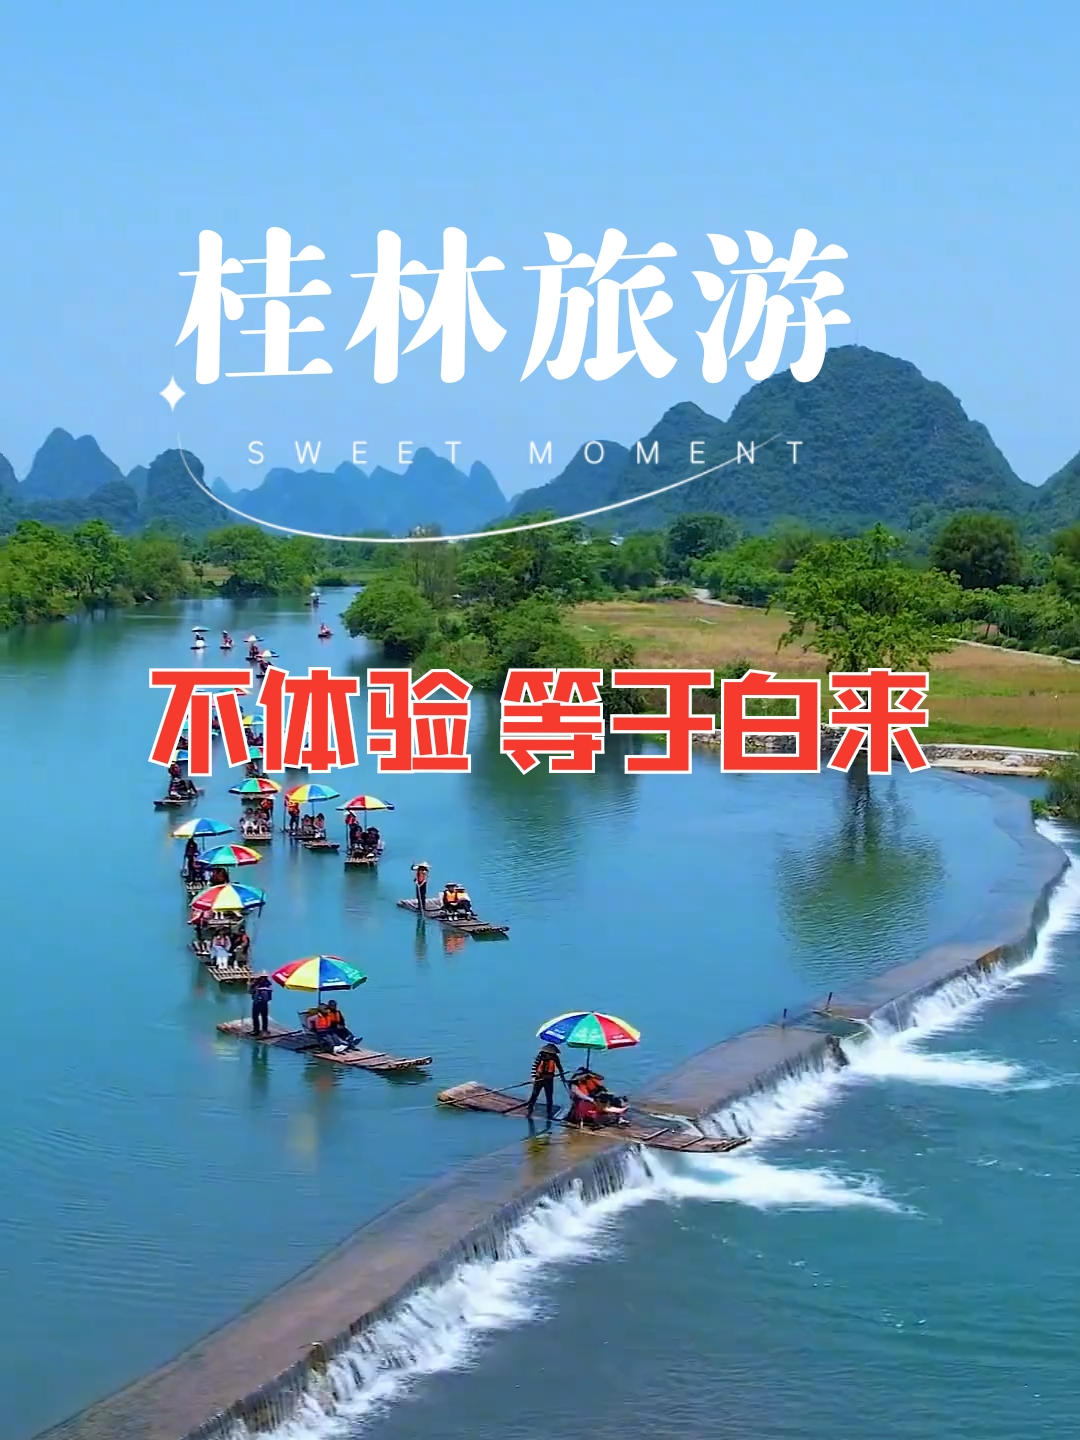 桂林旅游 如果不体验 等于白来